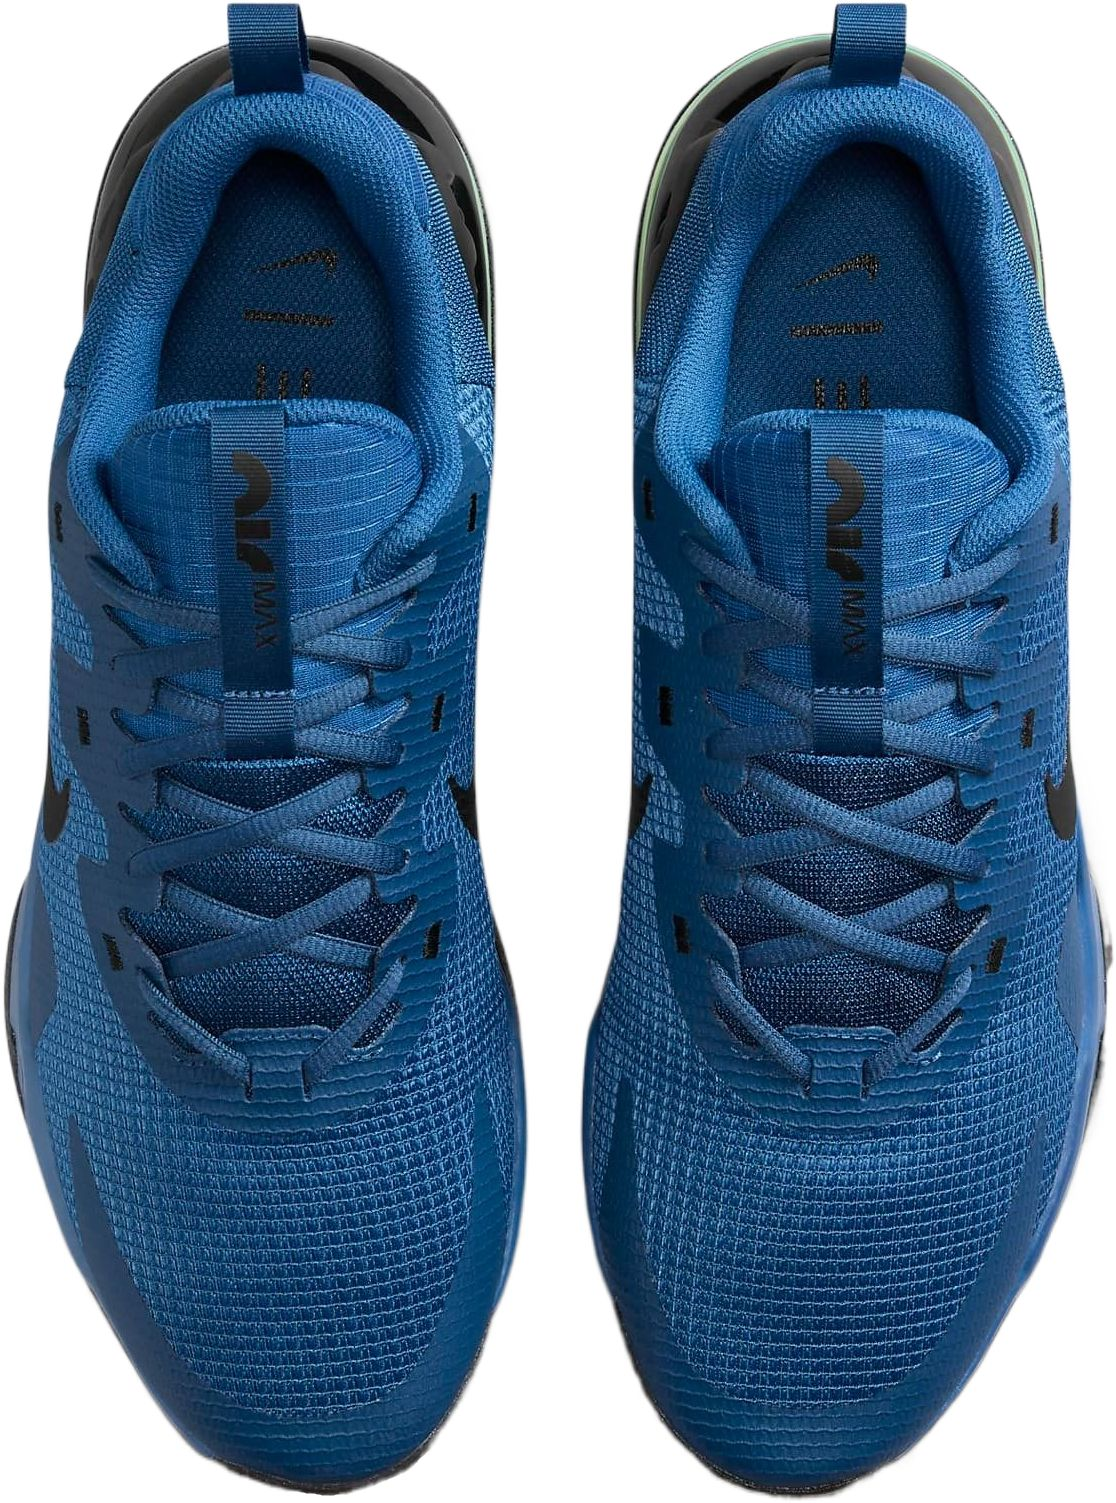 Кроссовки мужские Nike Air Max Alpha Trainer 5 DM0829-403 42 (8.5 US) синие фото 5